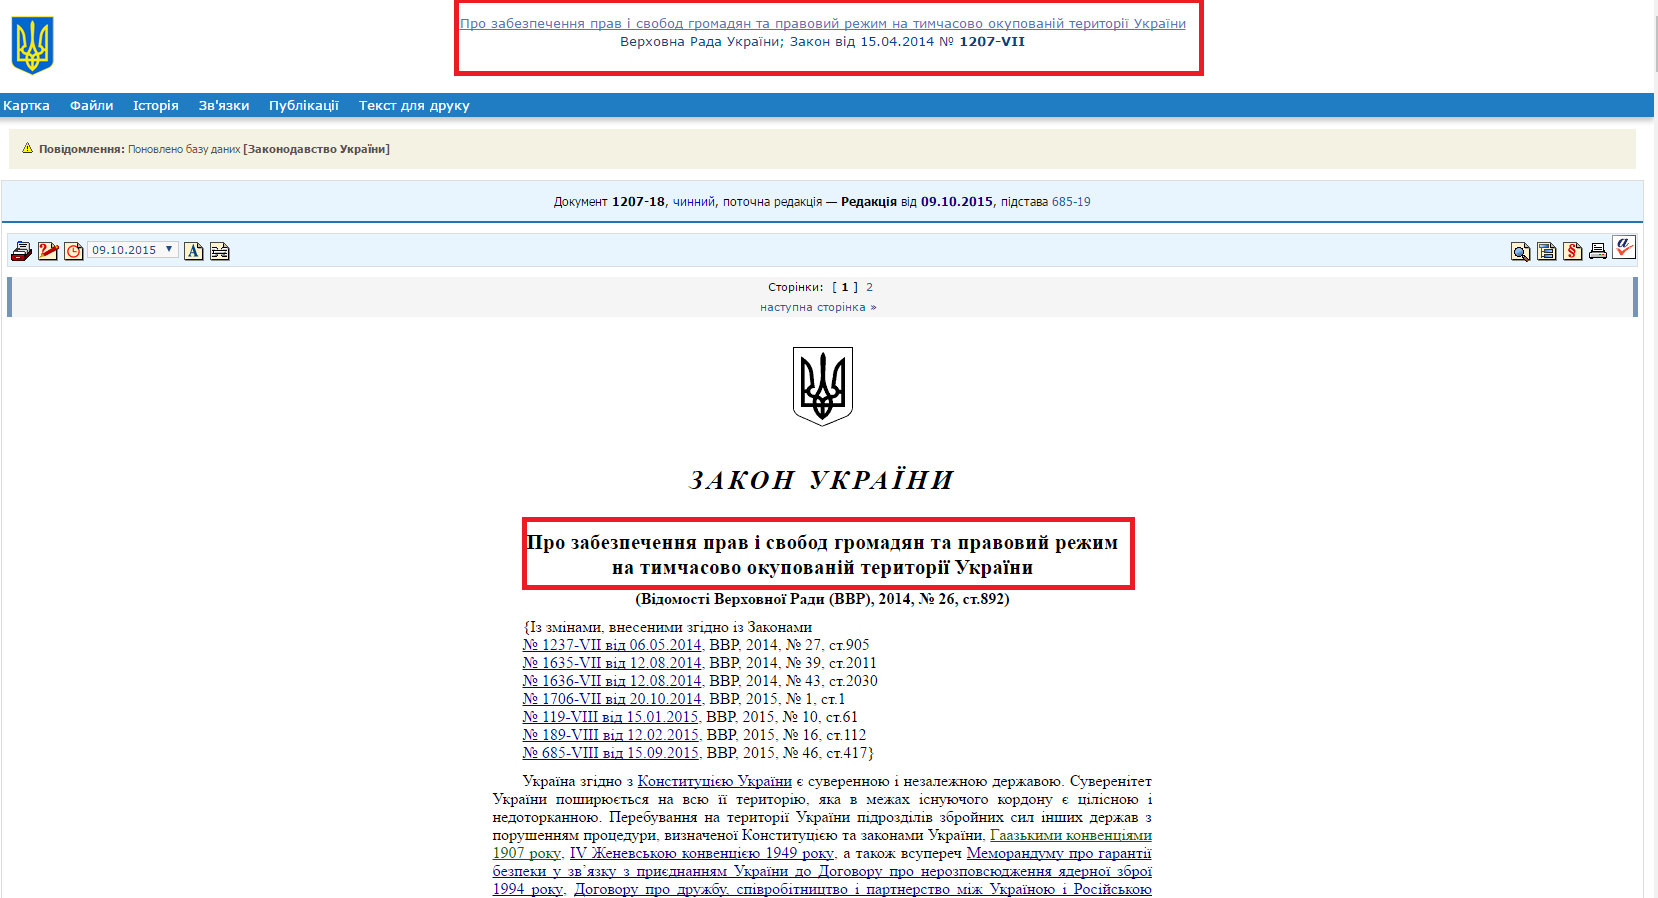 http://zakon0.rada.gov.ua/laws/show/1207-18